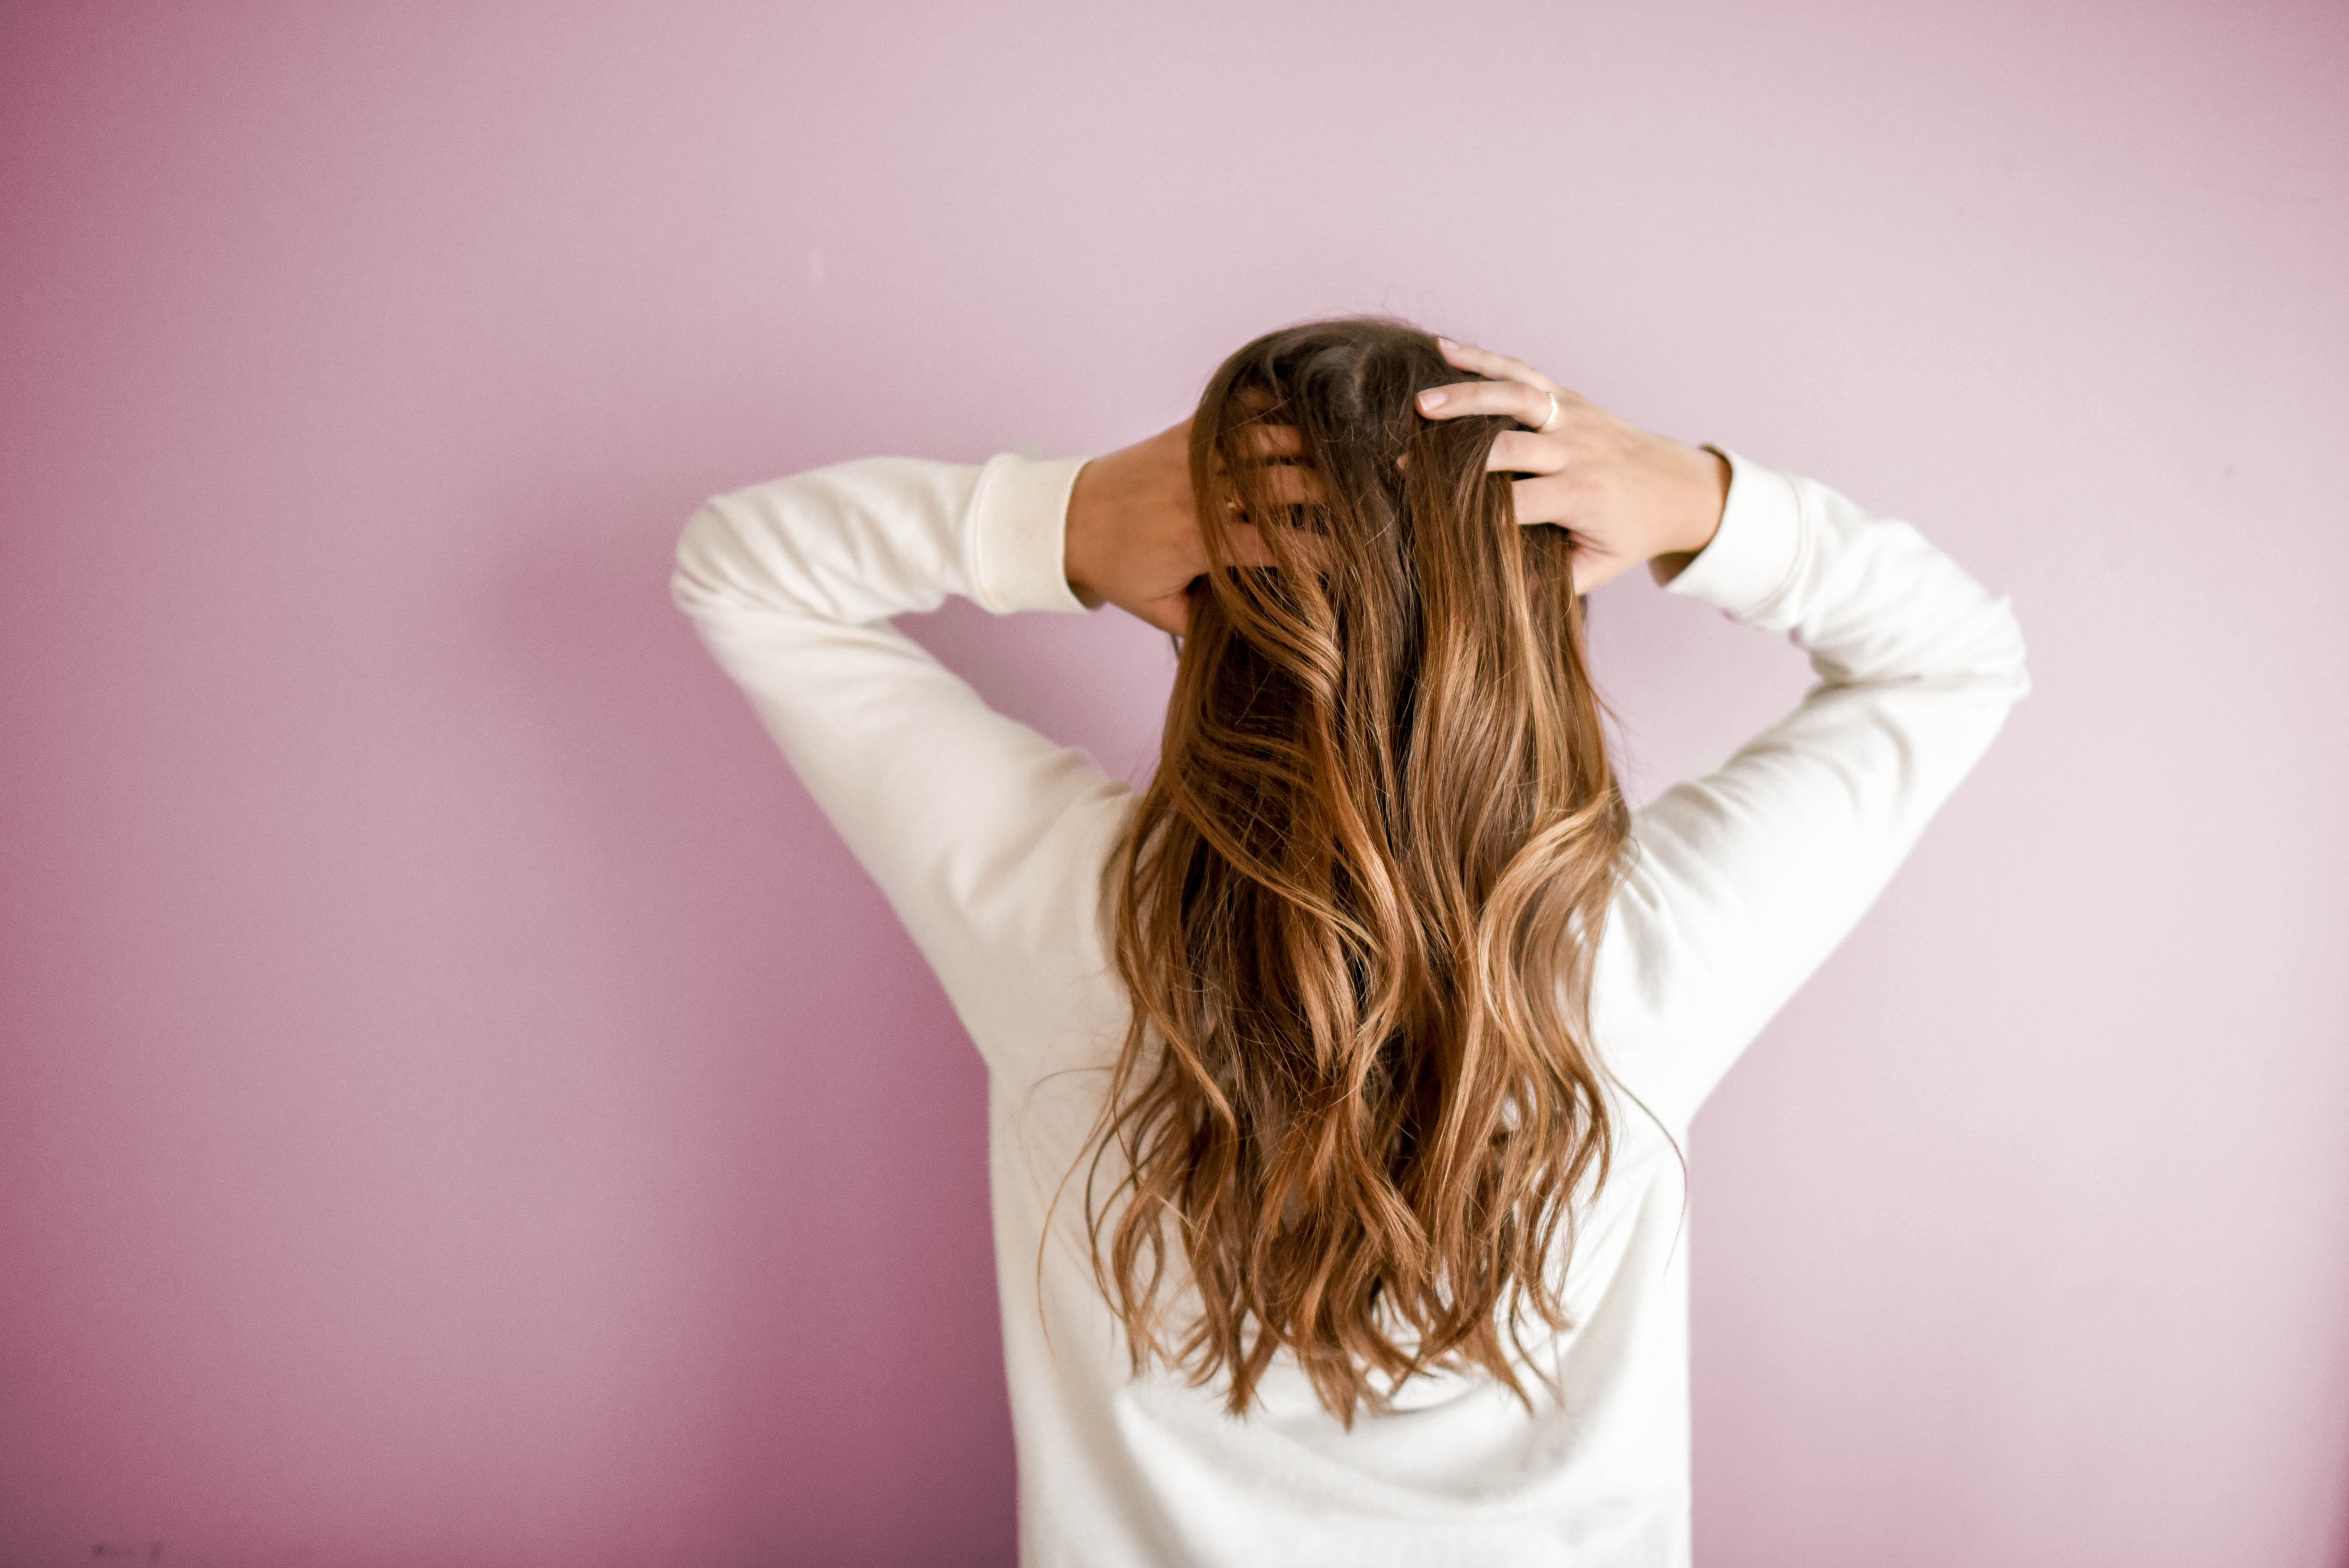  Saúde no inverno: queda de cabelo